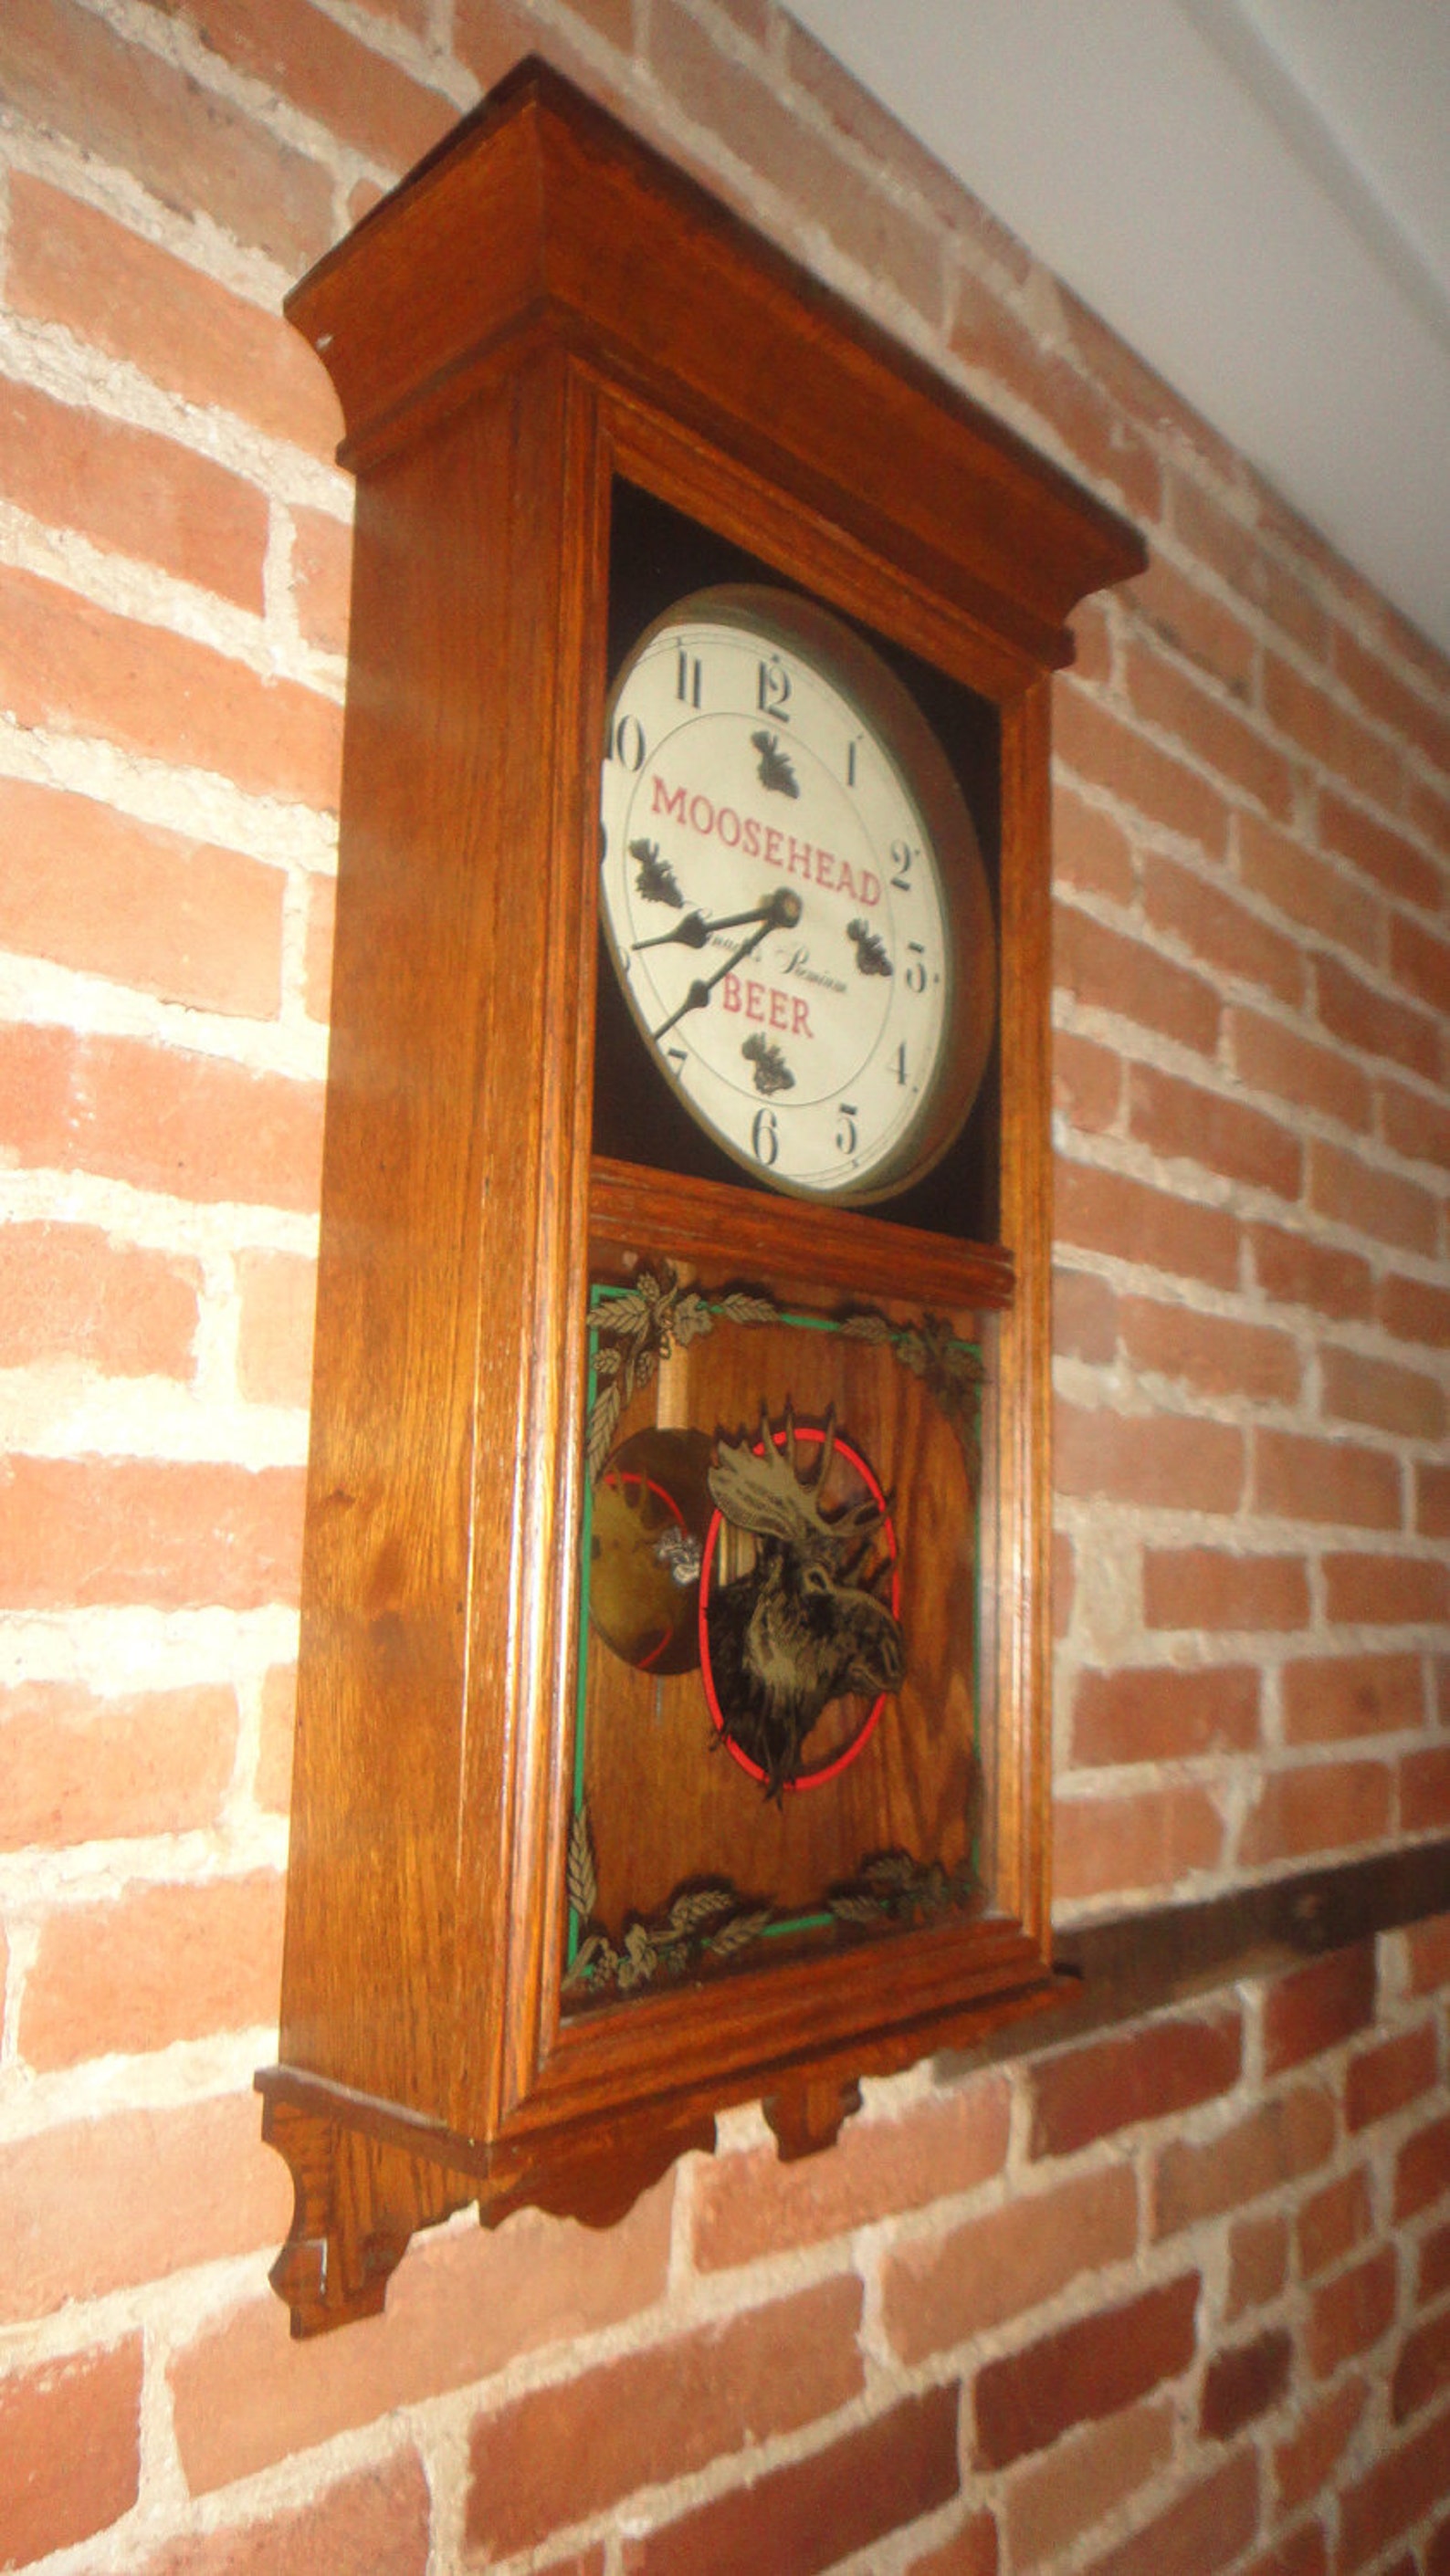 Moosehead Beer Wall Pendulum Clock in Oak Case | Etsy